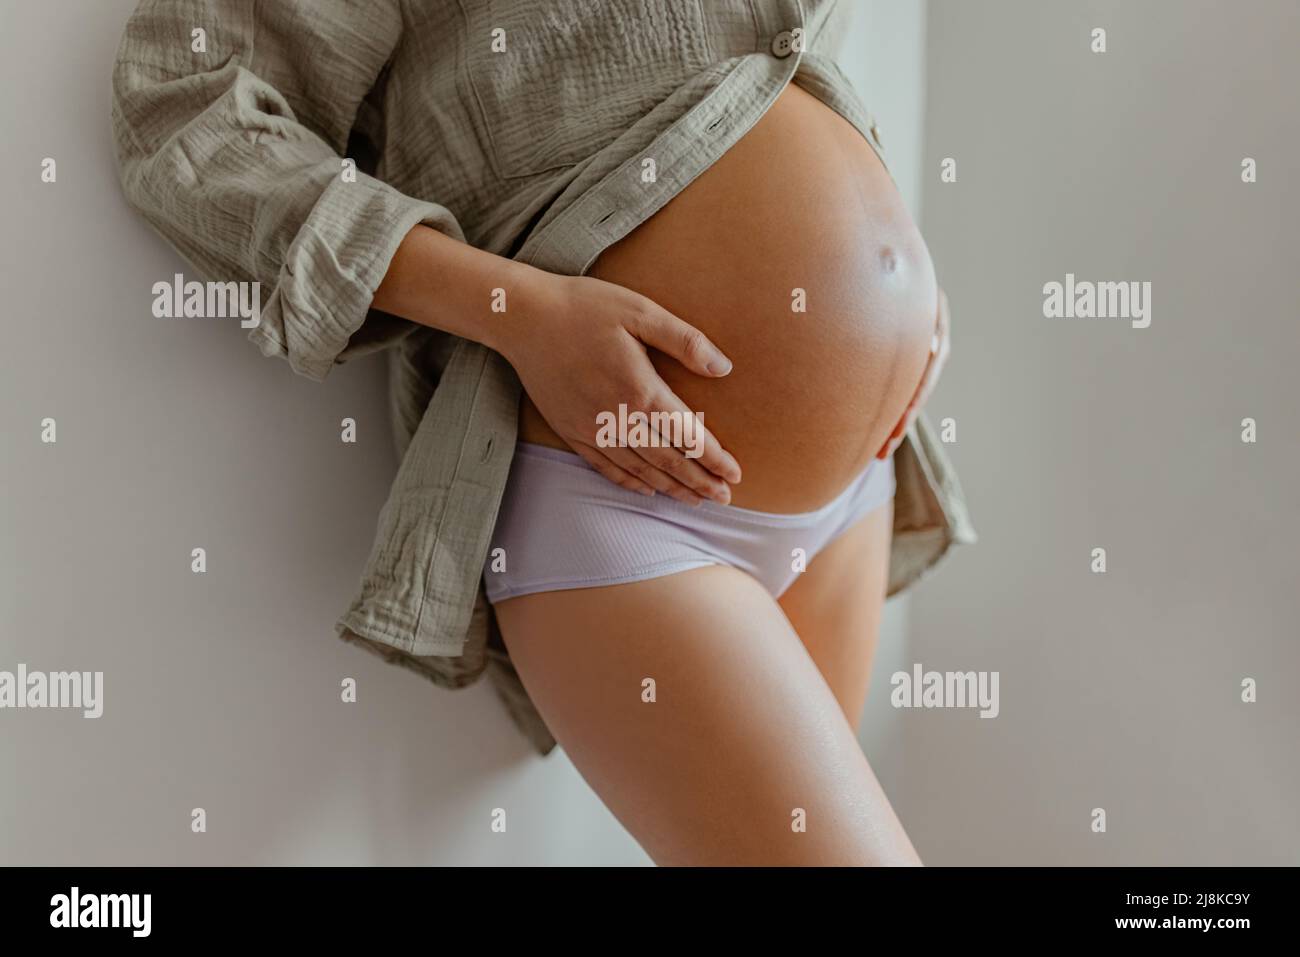 Mujer embarazada llevar ropa interior maternidad pijamas en casa relajante holding esperando vientre para el cuidado de la piel, la salud, el estilo de vida. Primer plano del vientre durante el embarazo Foto de stock